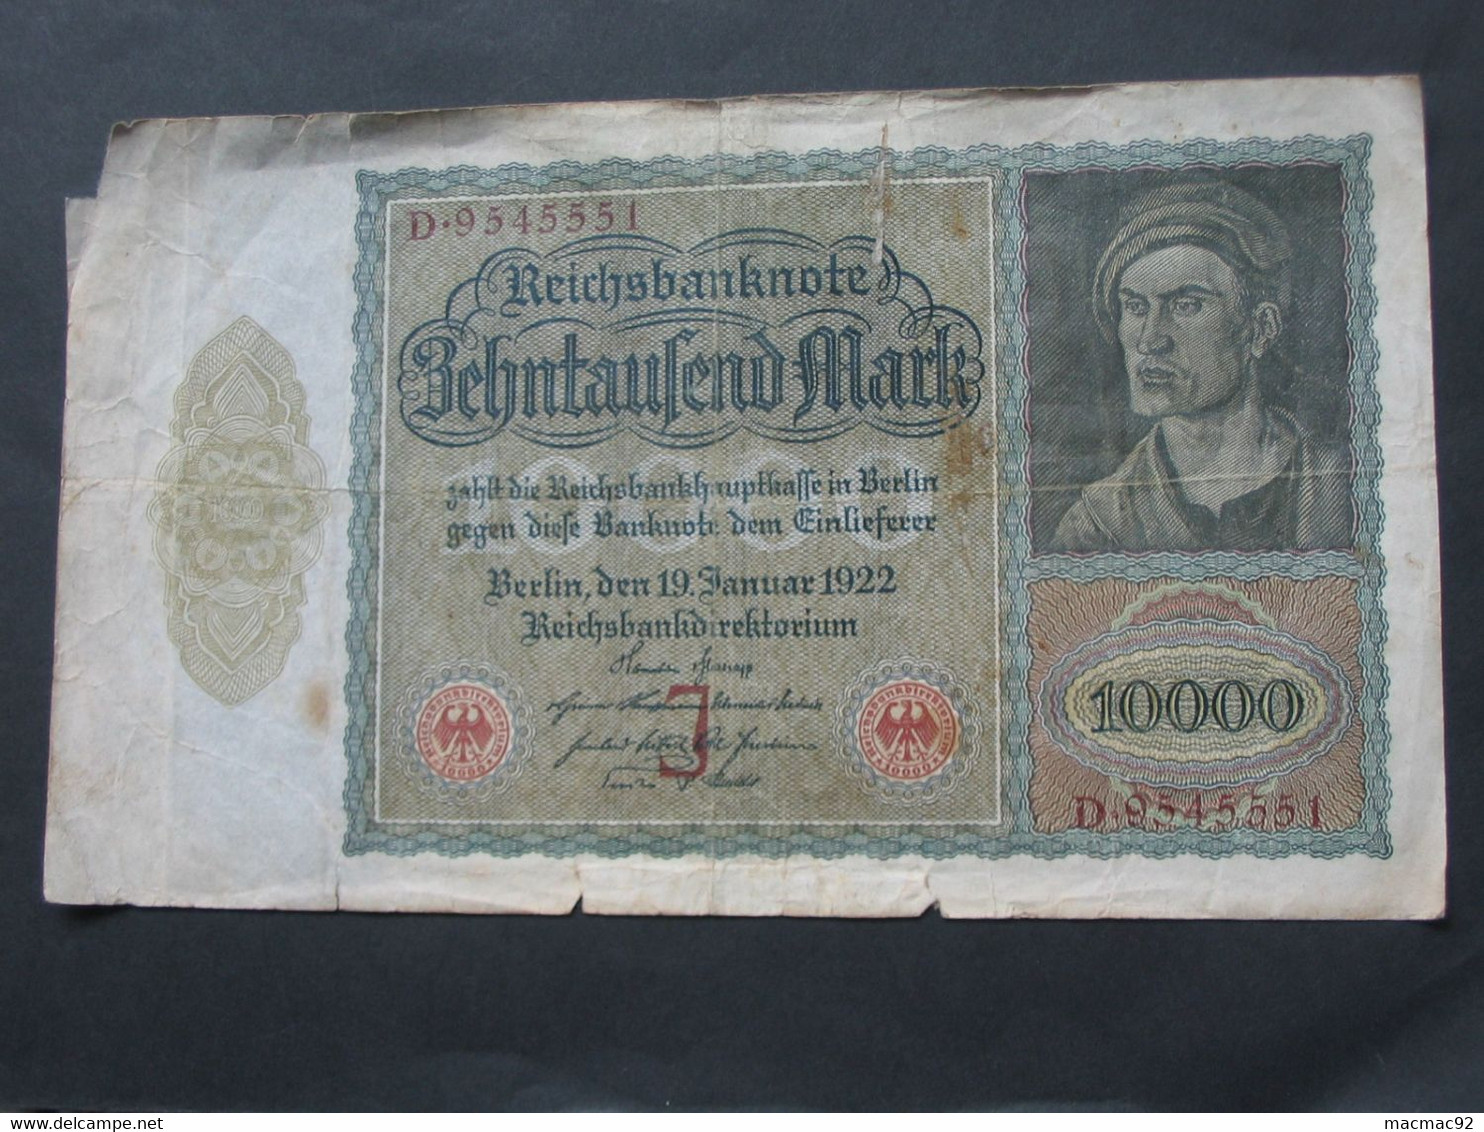 ALLEMAGNE - Zehntausend  Mark - Berlin 1922  Reichsbanknote - Germany   **** EN ACHAT IMMEDIAT **** - 10000 Mark